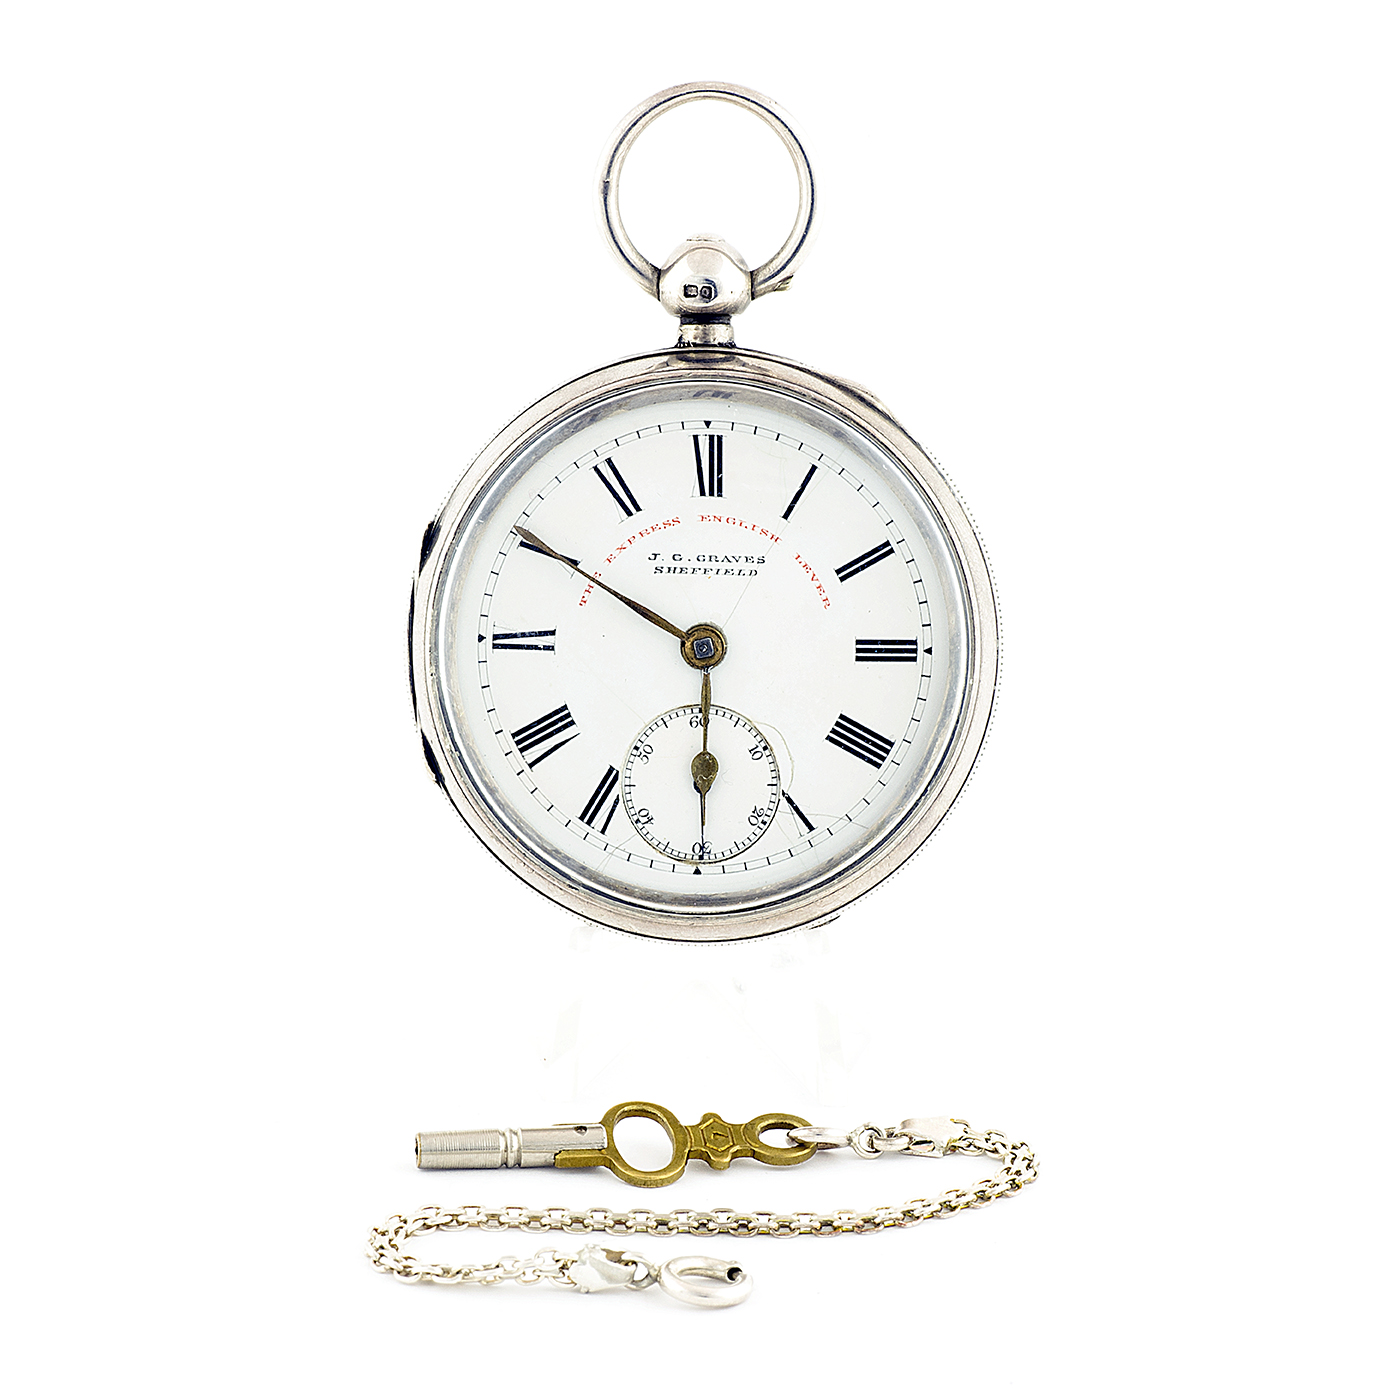 J.G. GRAVES (Sheffield). Reloj de bolsillo, lepine. Chester, 1899.